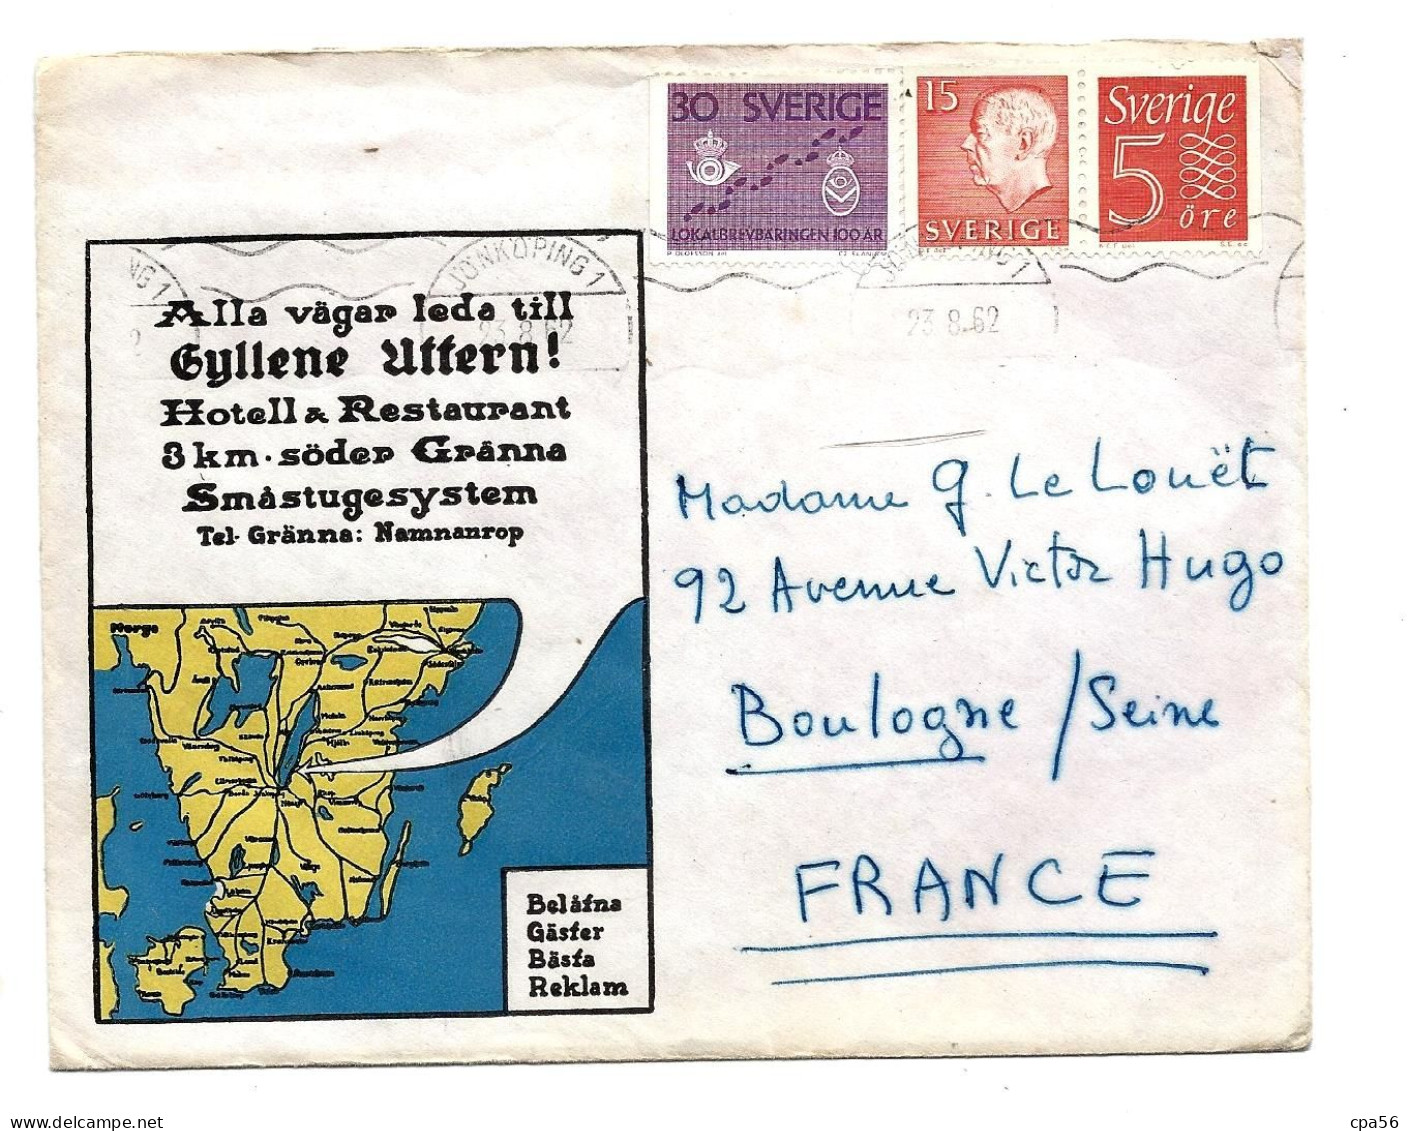 SVERIGE - SUEDE - SWEDEN - Letter 1962 - 3 Stamps - Hotell Restaurant GYLLENE UTTERN - Briefe U. Dokumente